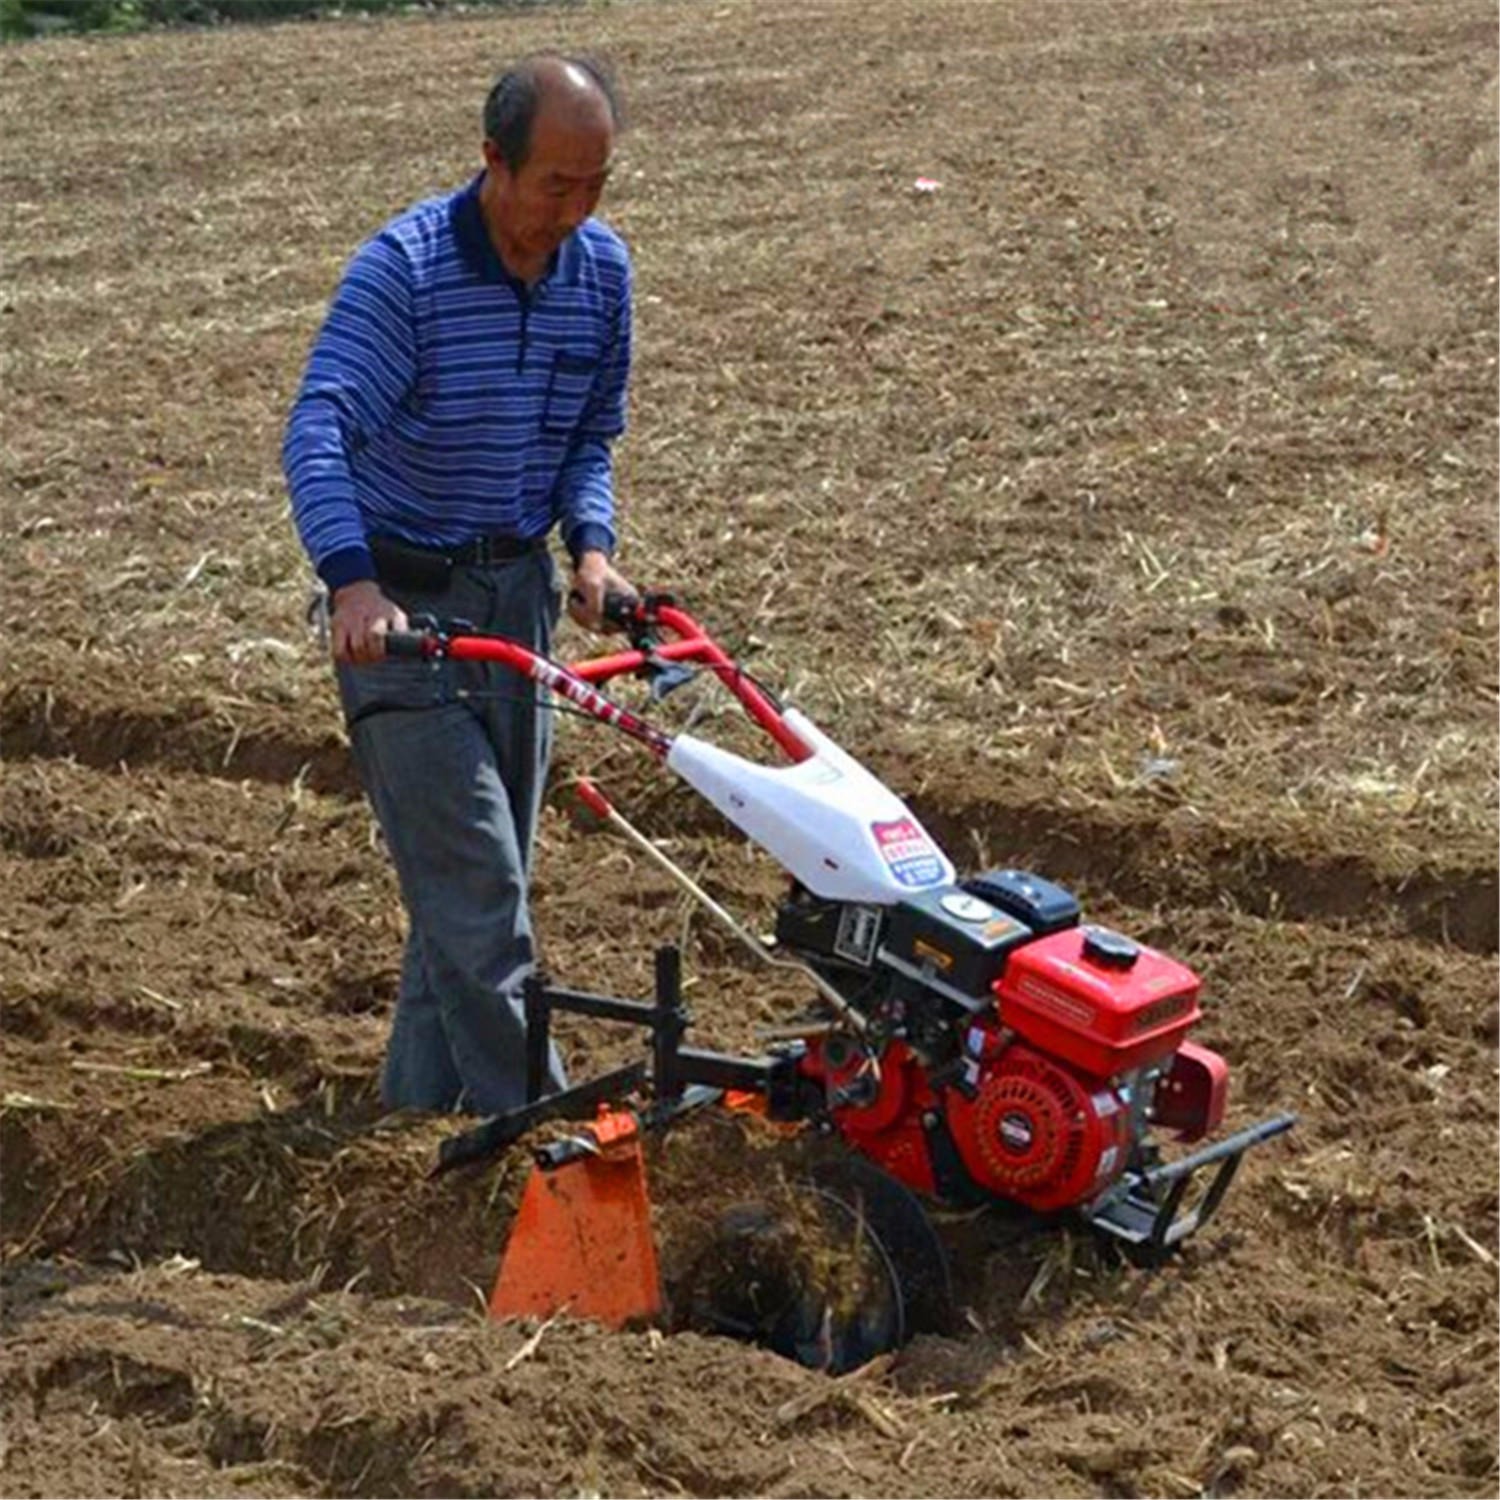 小型旋耕机 汽油动力微耕机 沙地微耕松土除草一体机 多功能手扶式旋耕机图片